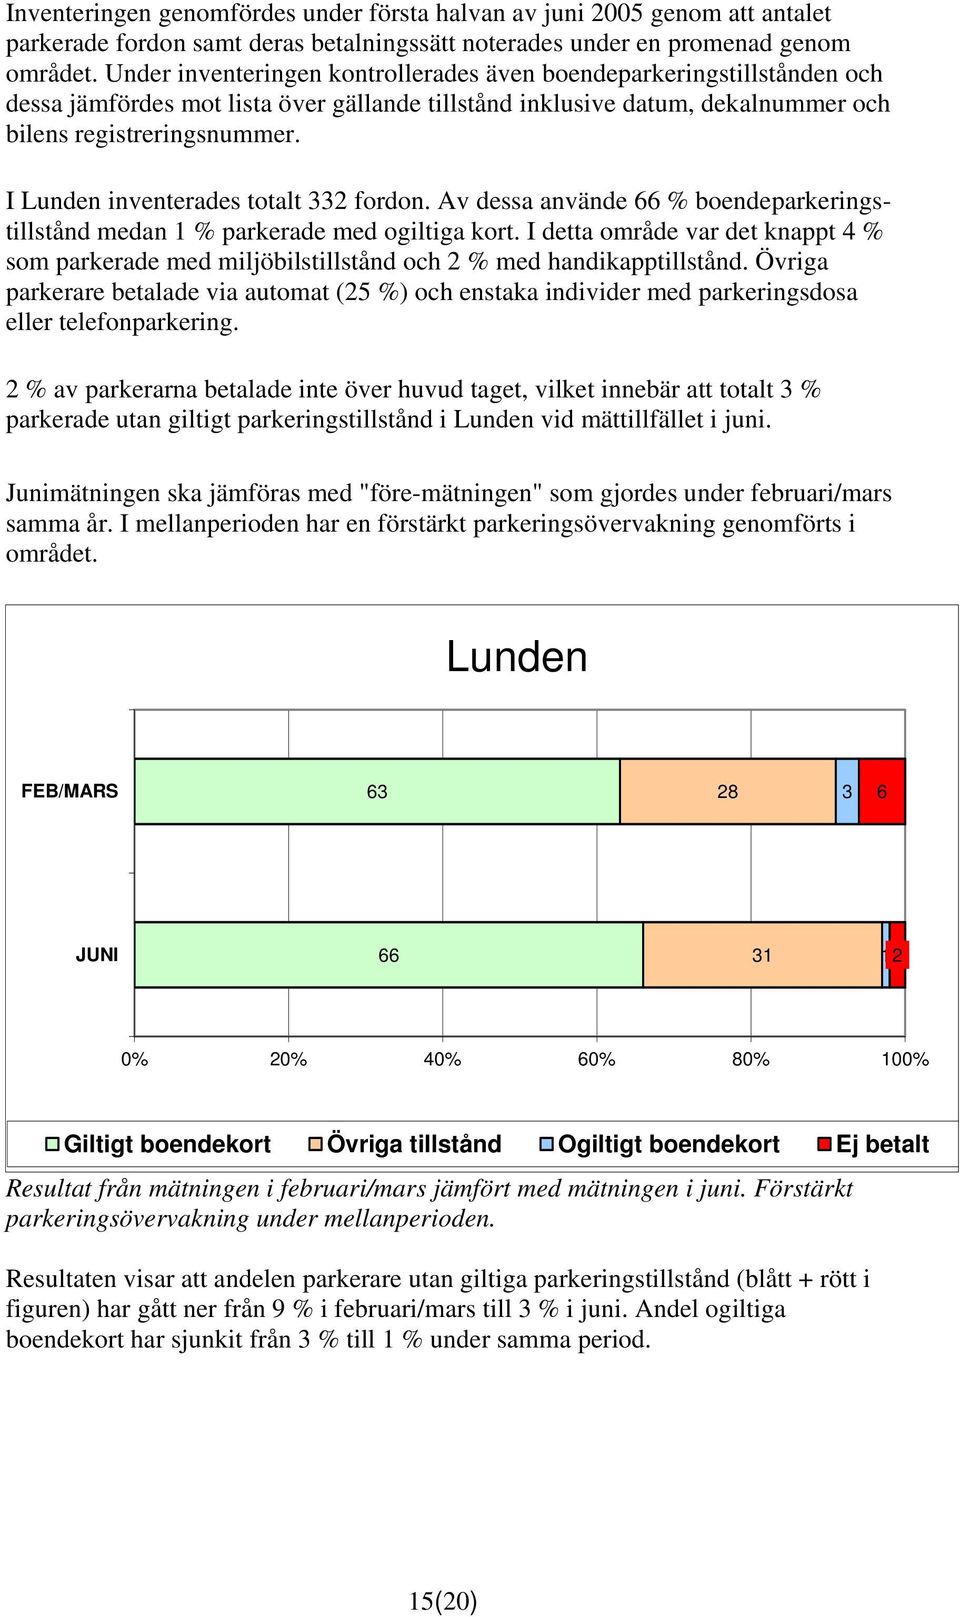 I Lunden inventerades totalt 332 fordon. Av dessa använde 66 % boendeparkeringstillstånd medan 1 % parkerade med ogiltiga kort.